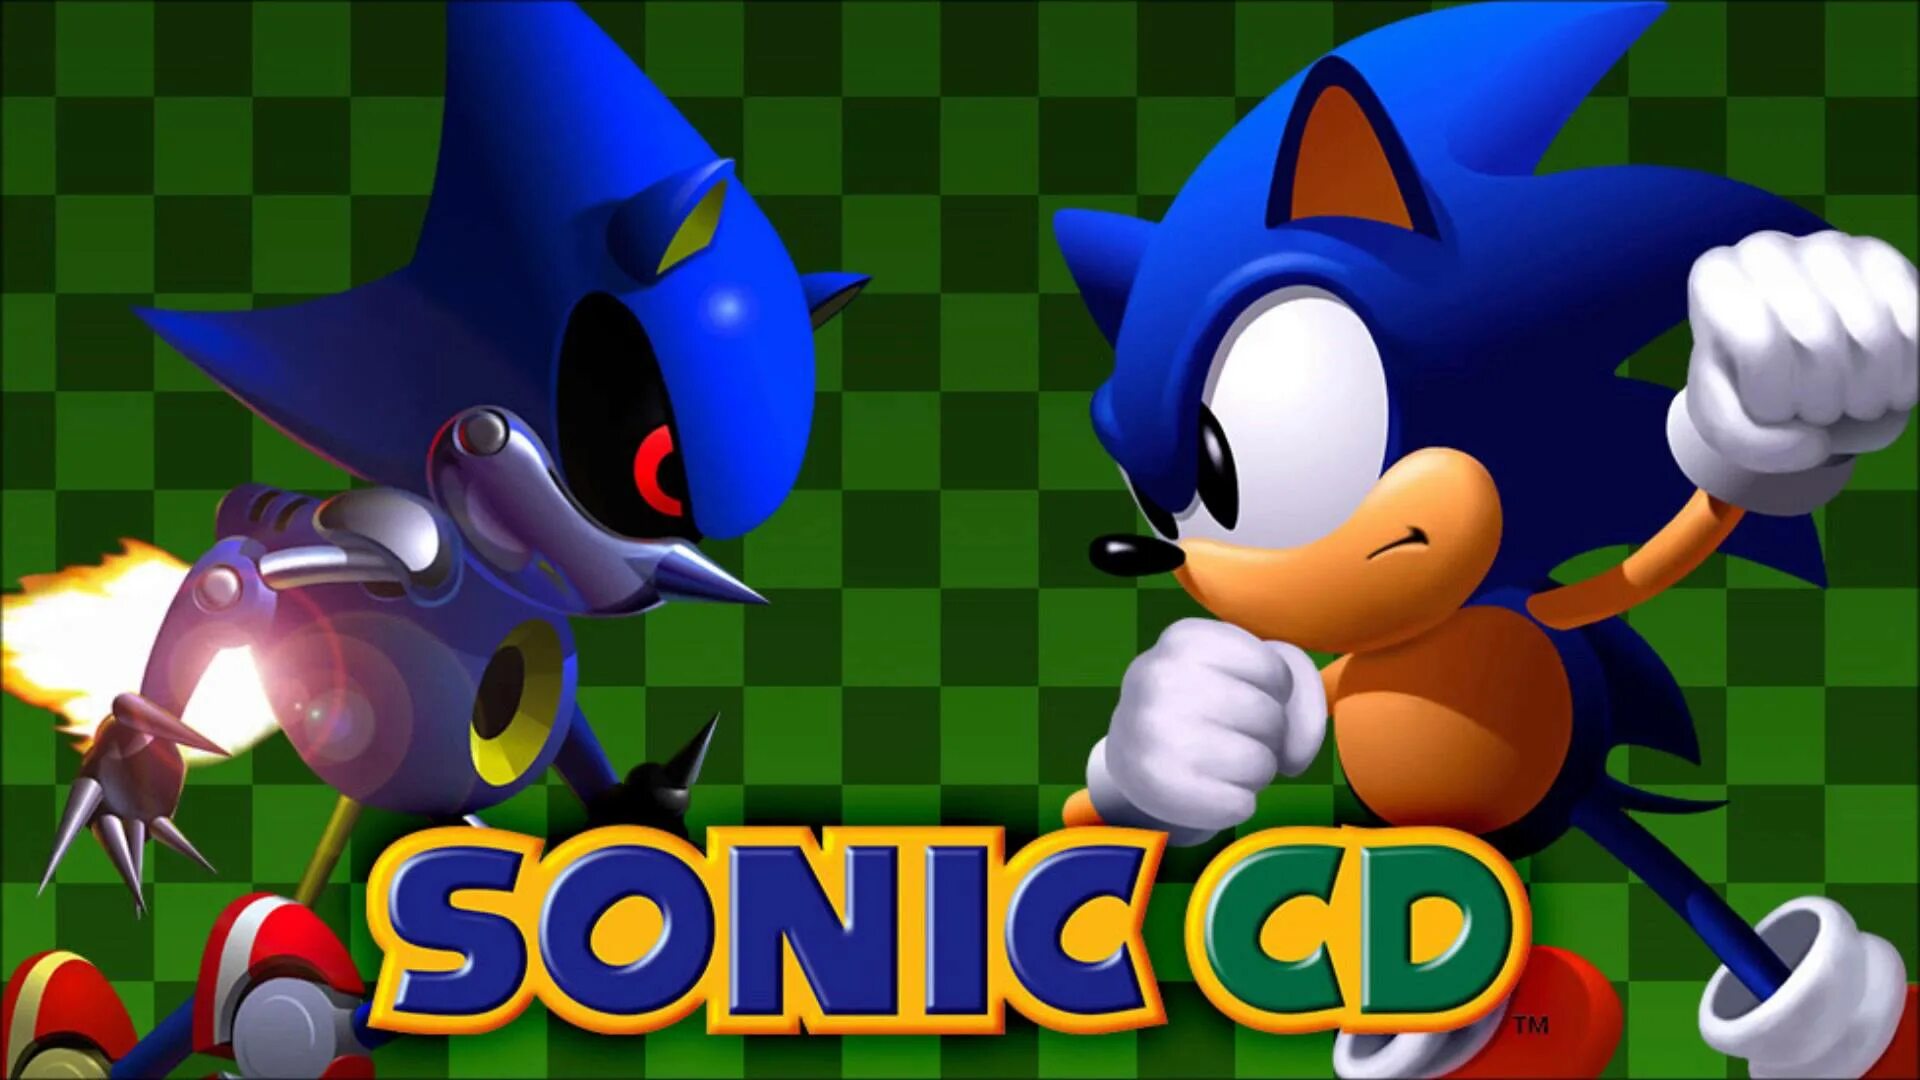 Соник СД. Sonic CD 1993. Sonic CD r9. Соник СД Классик. Японская версия соника